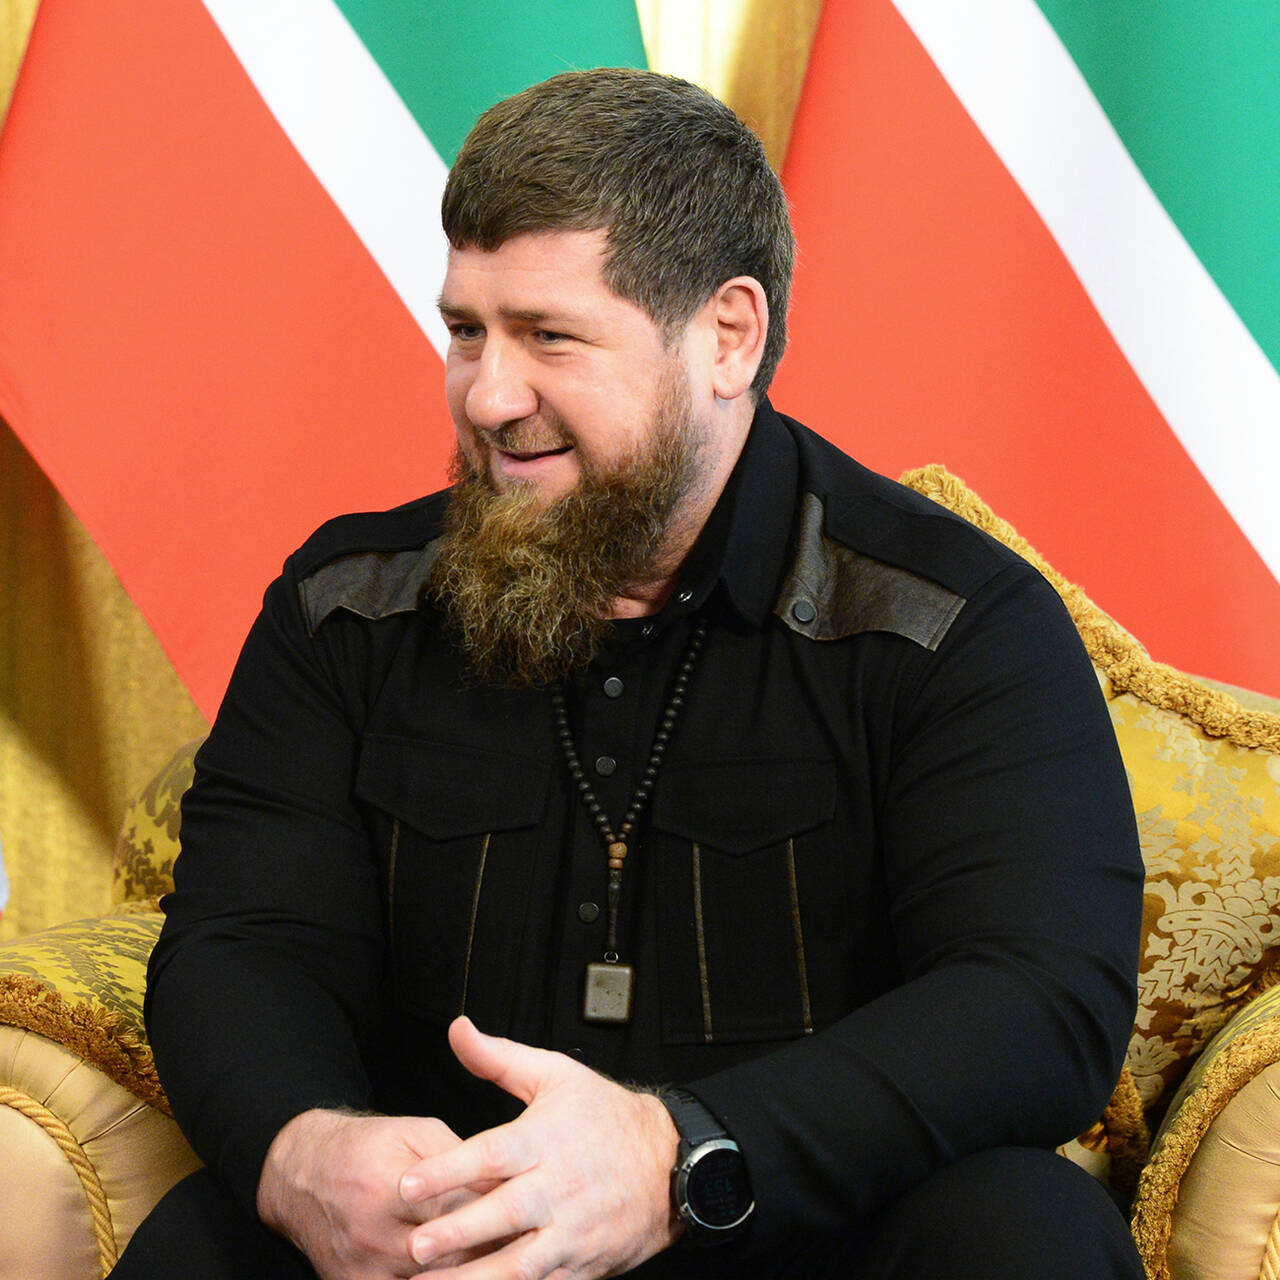 Рамзан Кадыров сообщил о встрече с Владимиром Путиным в Кремле - Главные новости